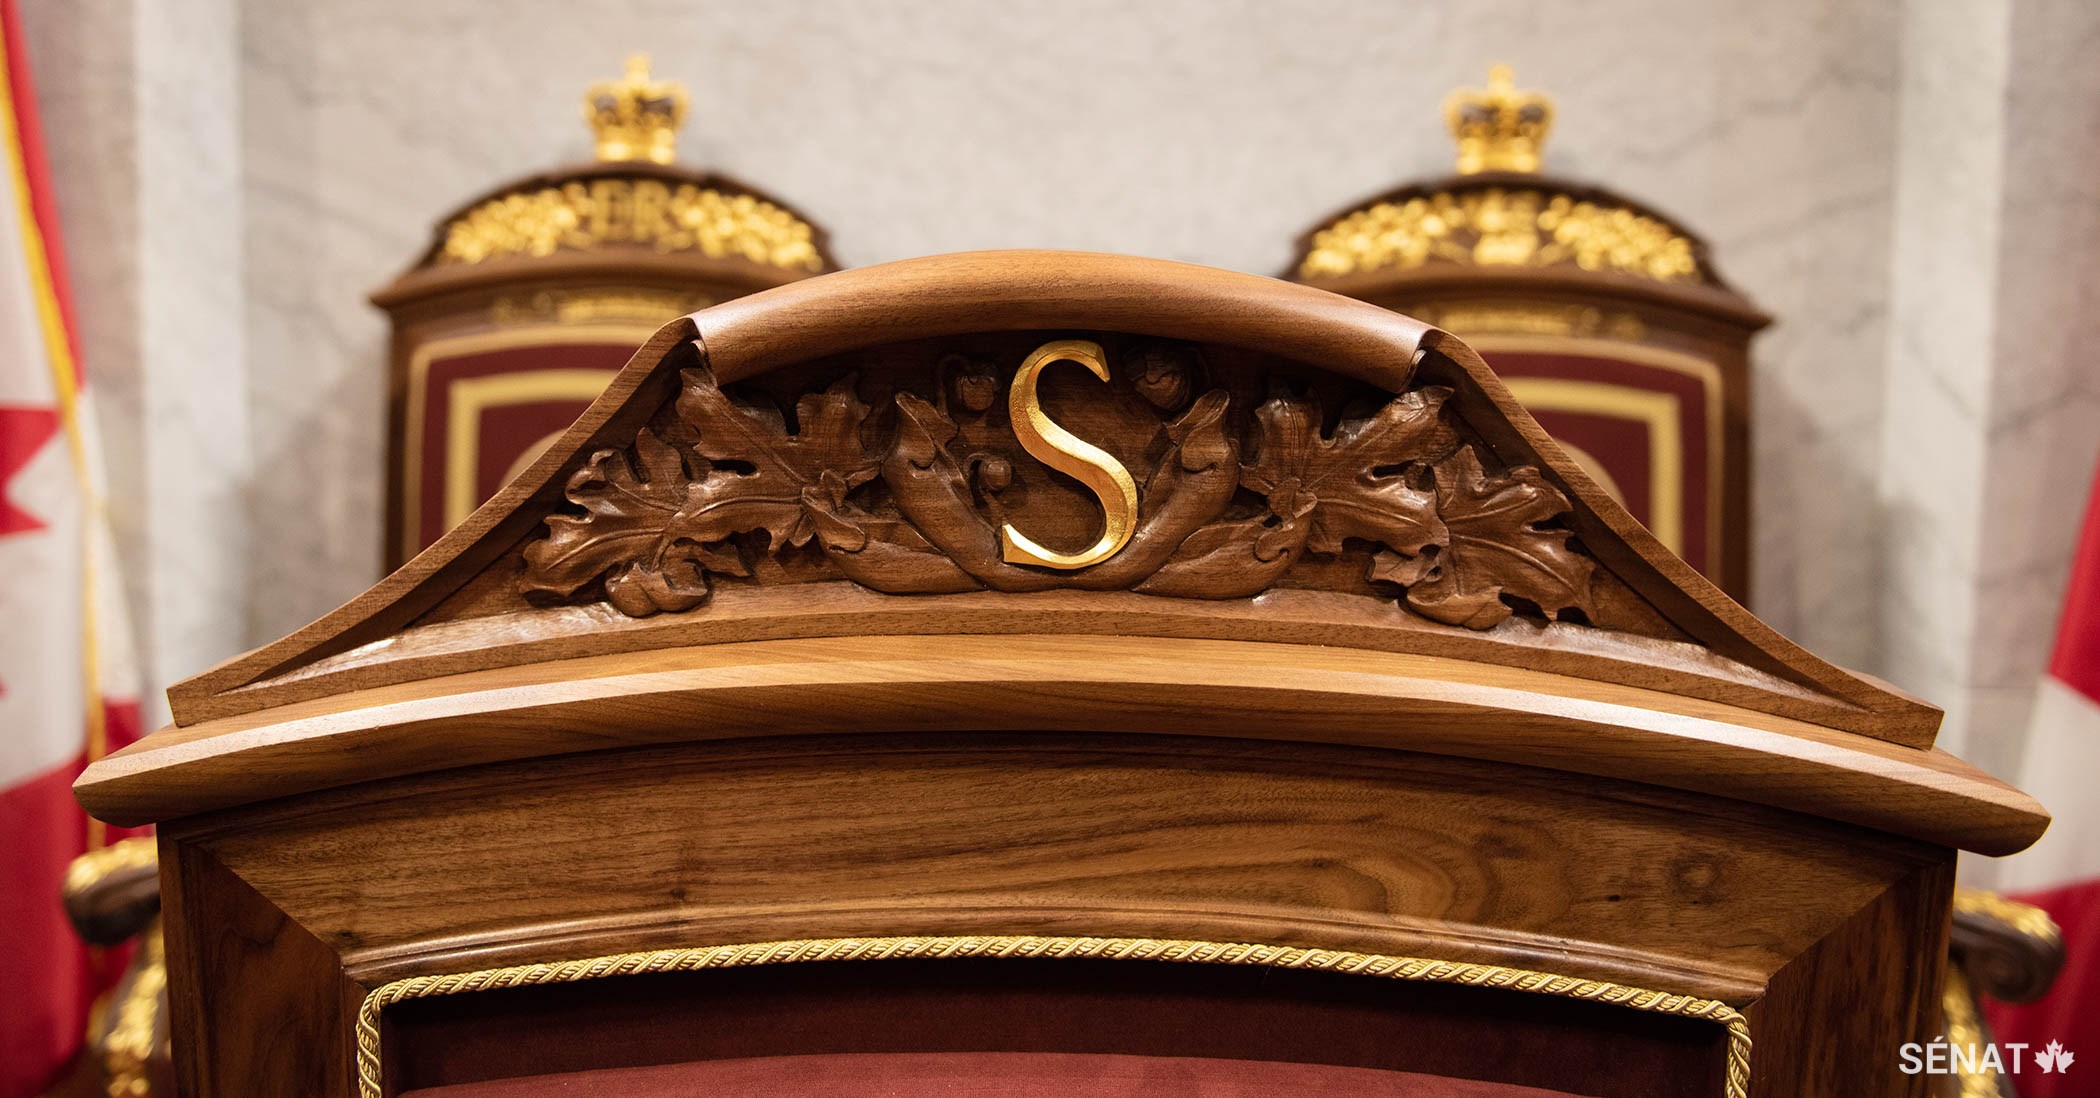 La lettre S, qui représente le mot « Sénat », est gravée dans la tête du fauteuil du Président du Sénat. Elle est entourée de feuilles d’érable.